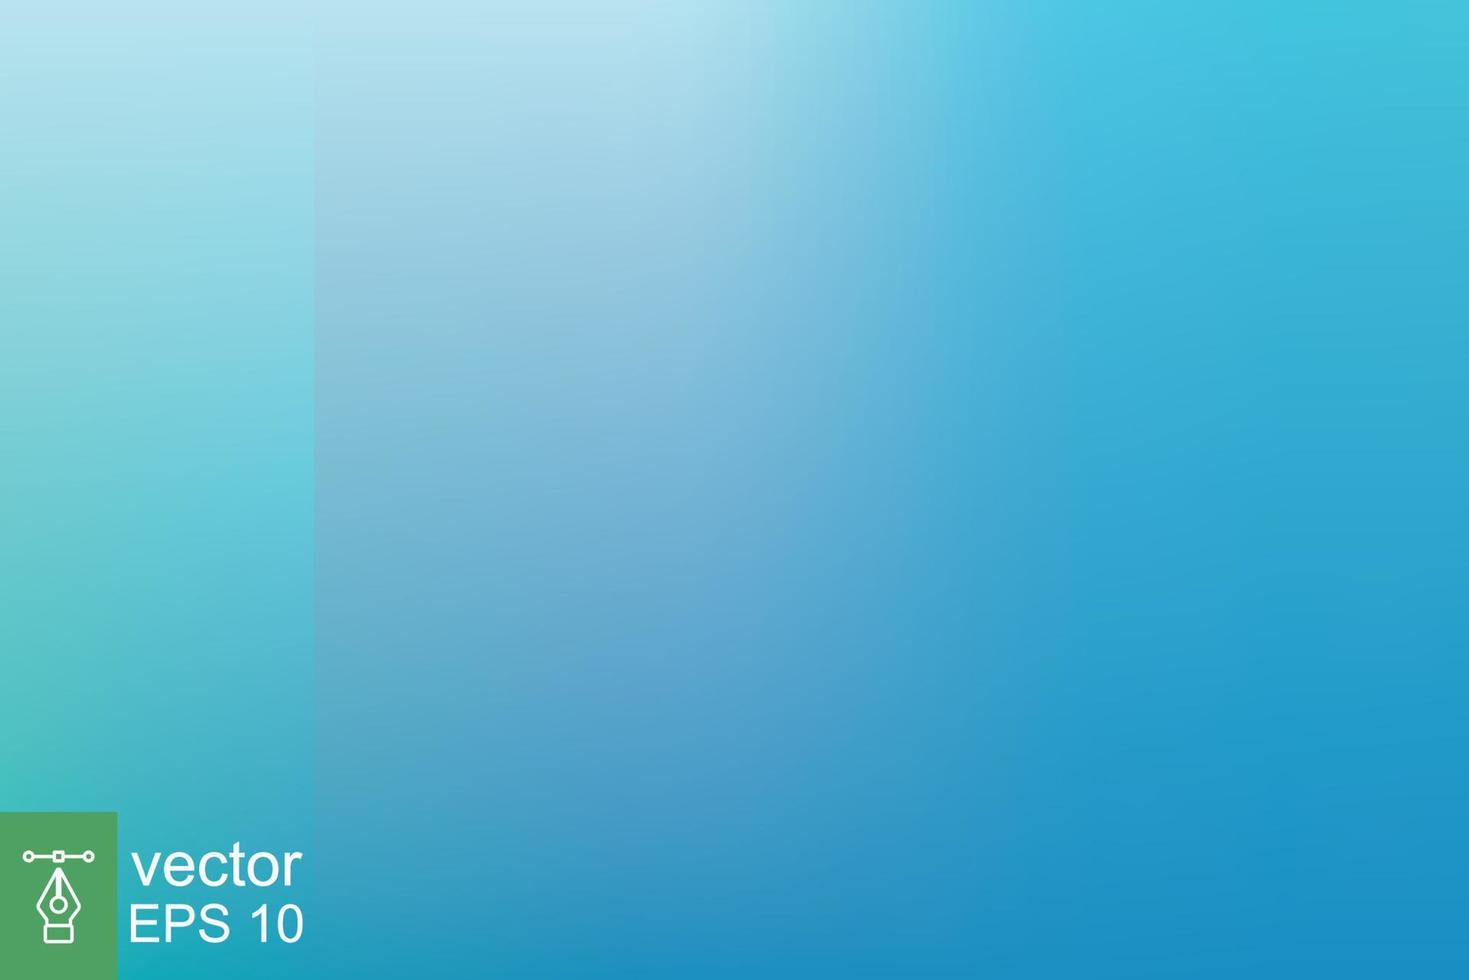 abstrakt blå kricka lutning bakgrund. suddig turkos vatten bakgrund. ljus grön, mjuk, hav, hav, natur. vektor illustration för din grafisk design, baner, sommar eller aqua affisch. eps 10.